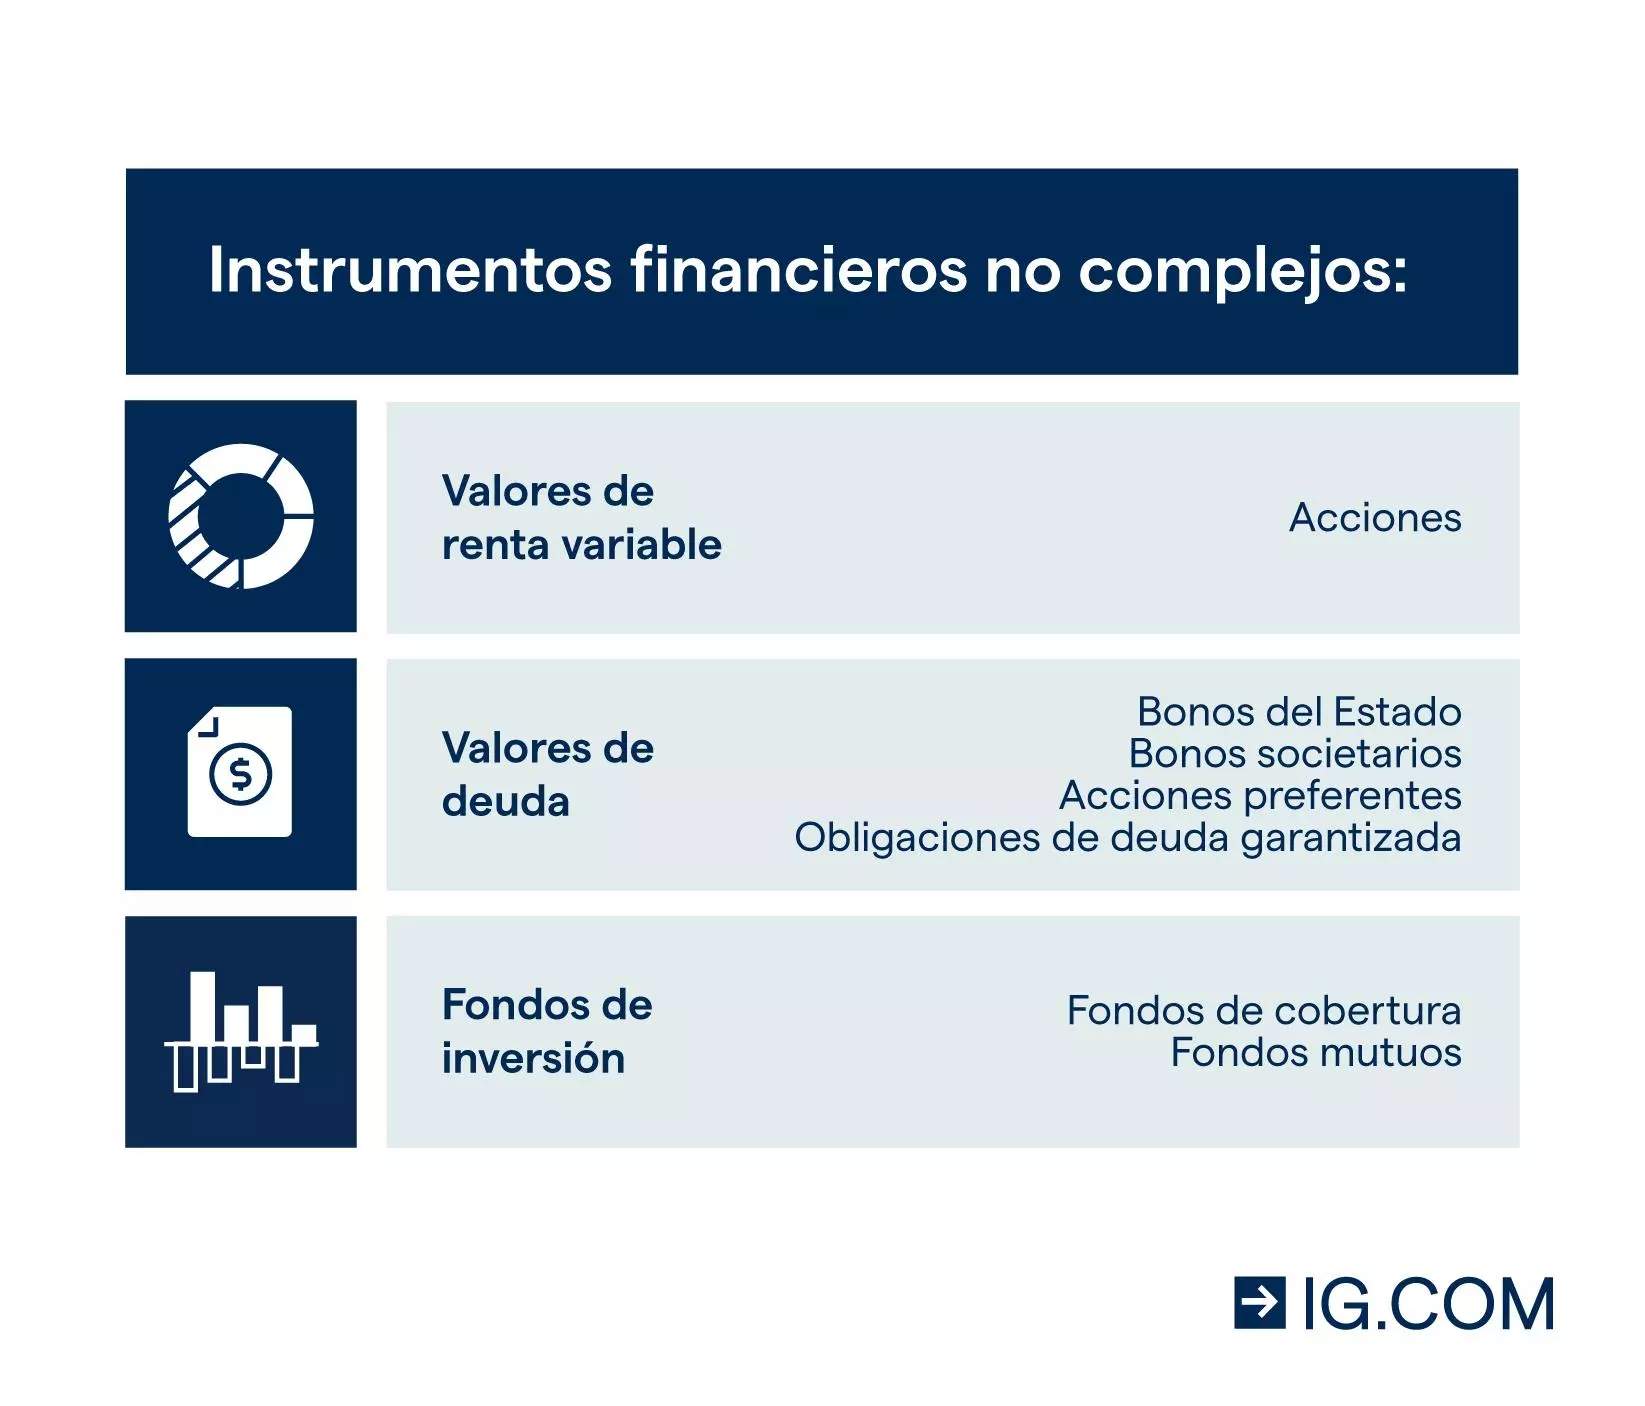 Instrumentos financieros no complejos